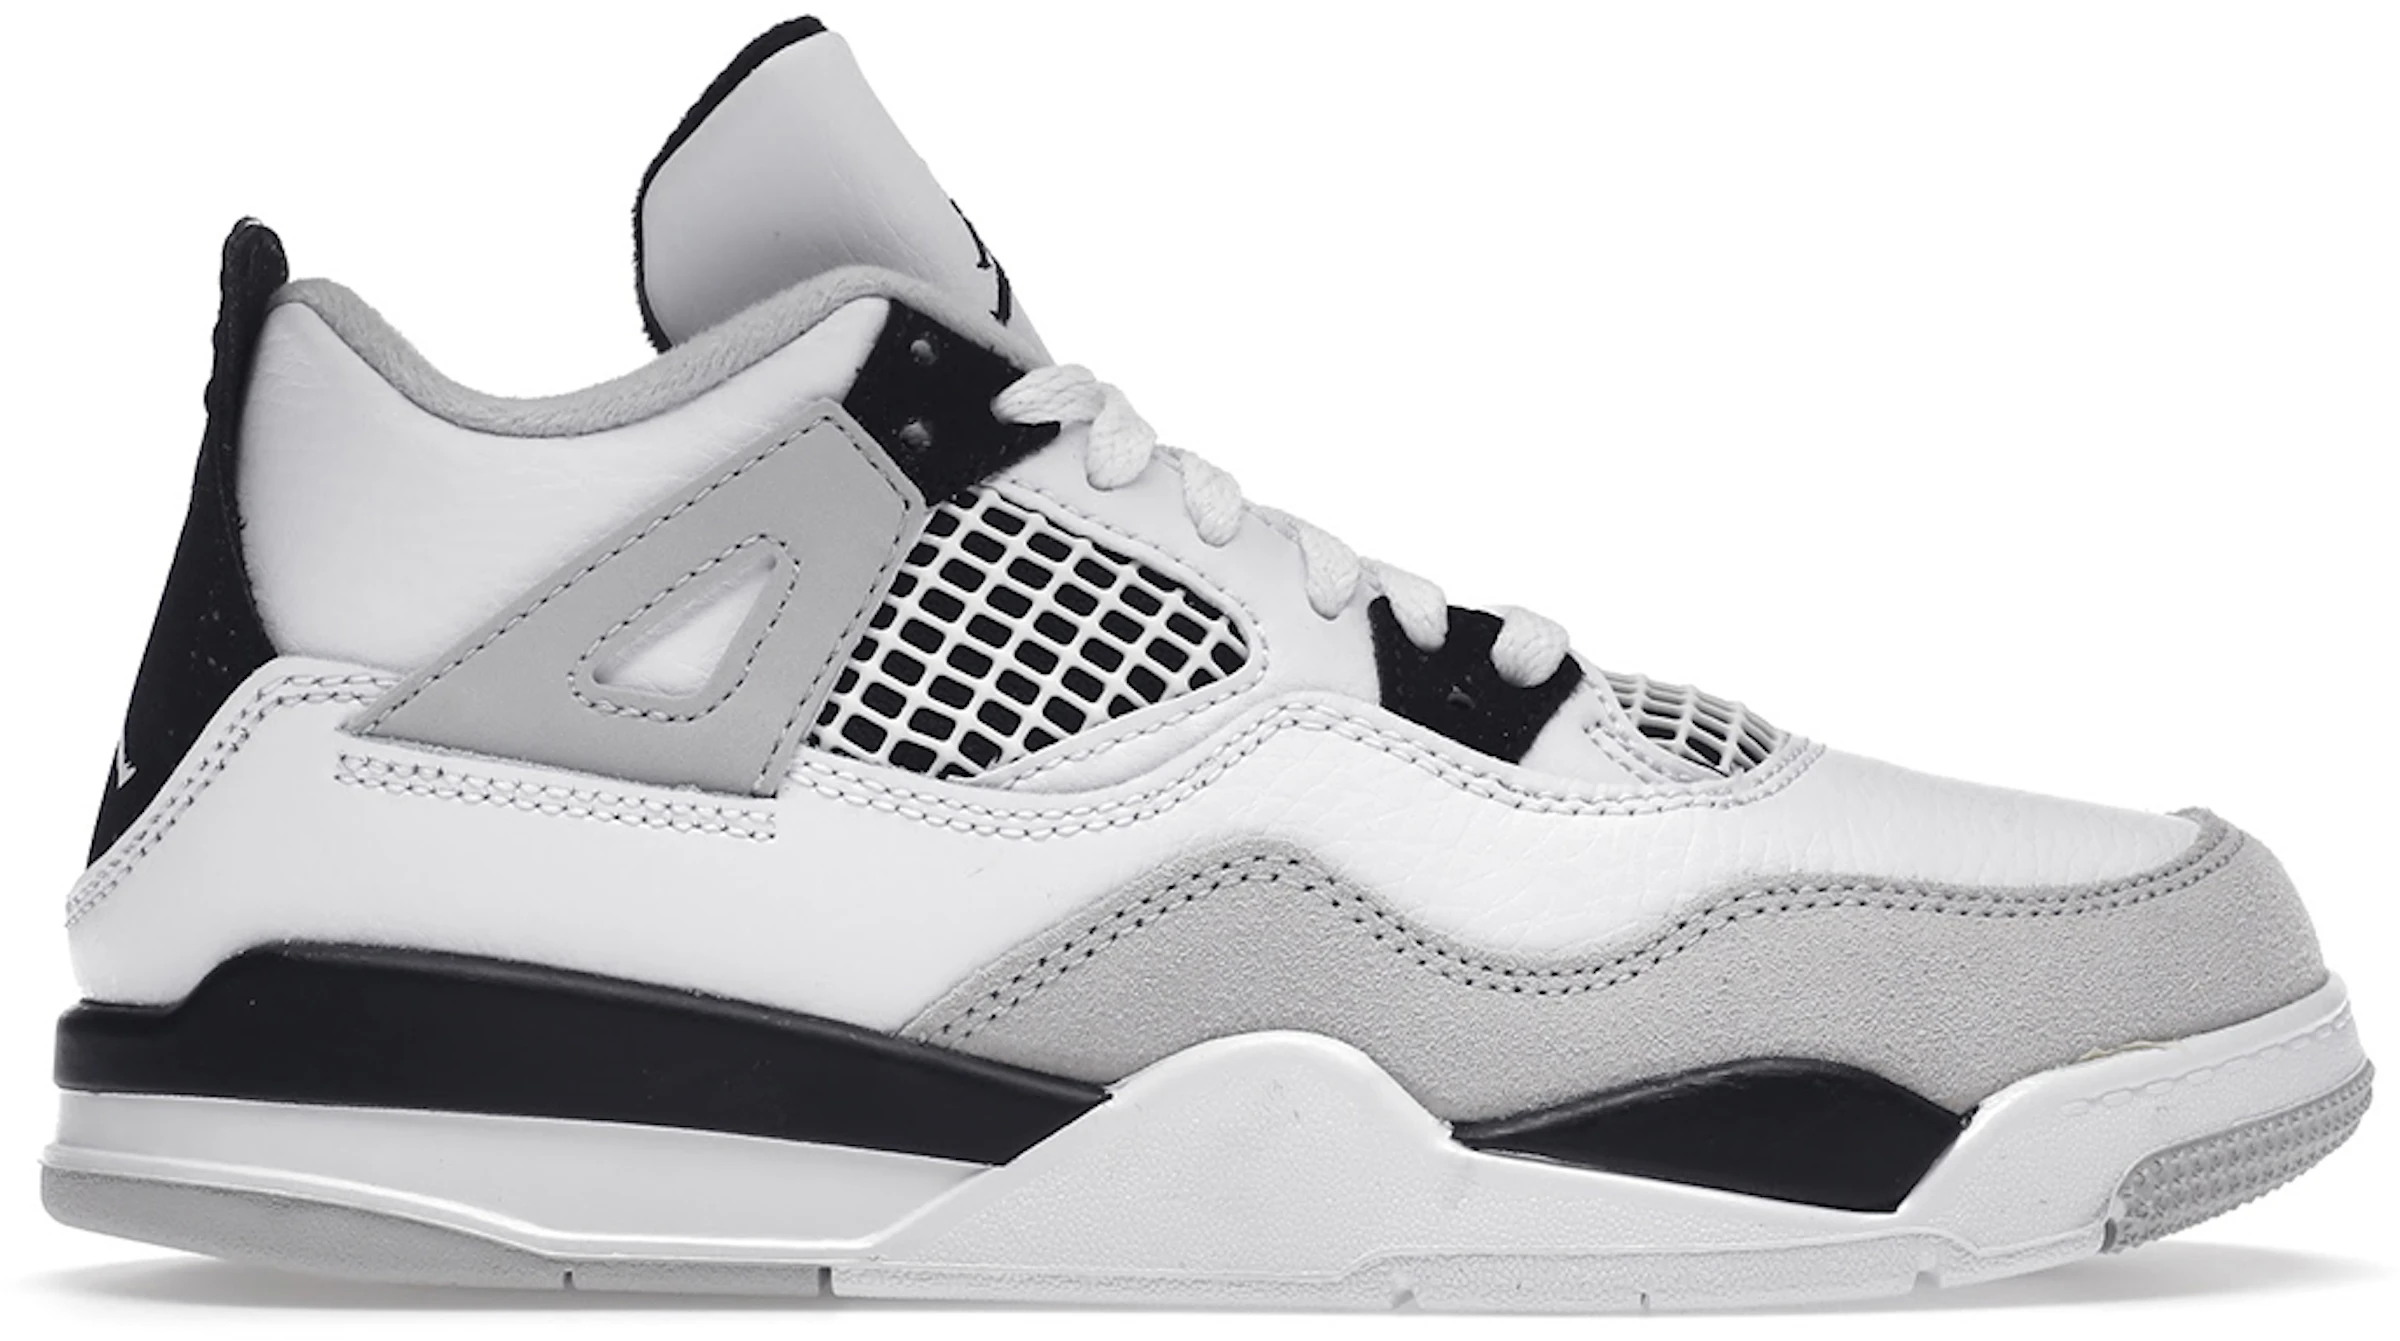 Buy Air Jordan 4 Shoes New Sneakers Stockx